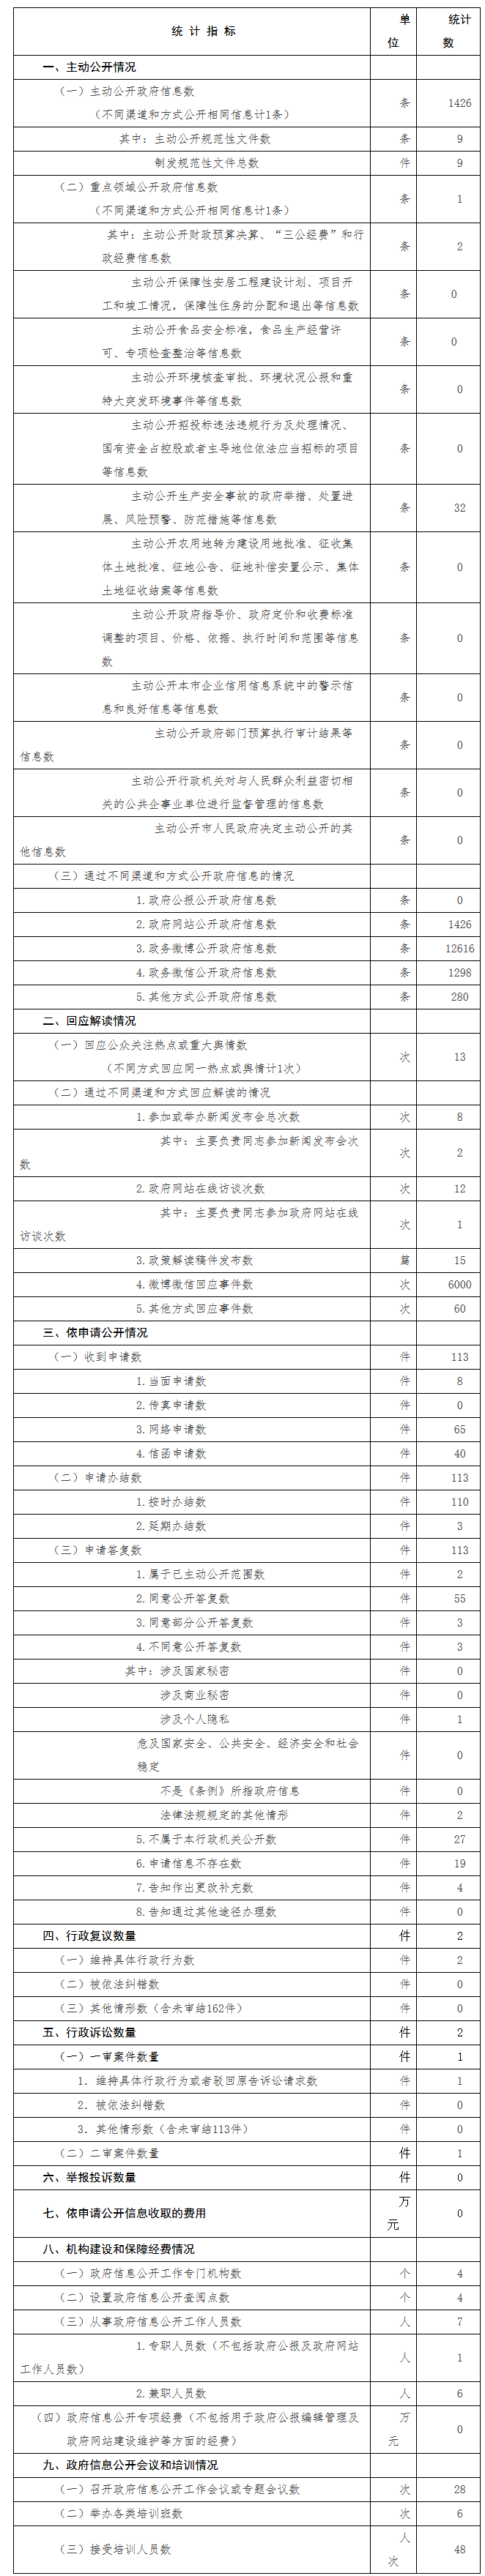 北京市交通委员会政府信息公开情况统计表(2017年度)